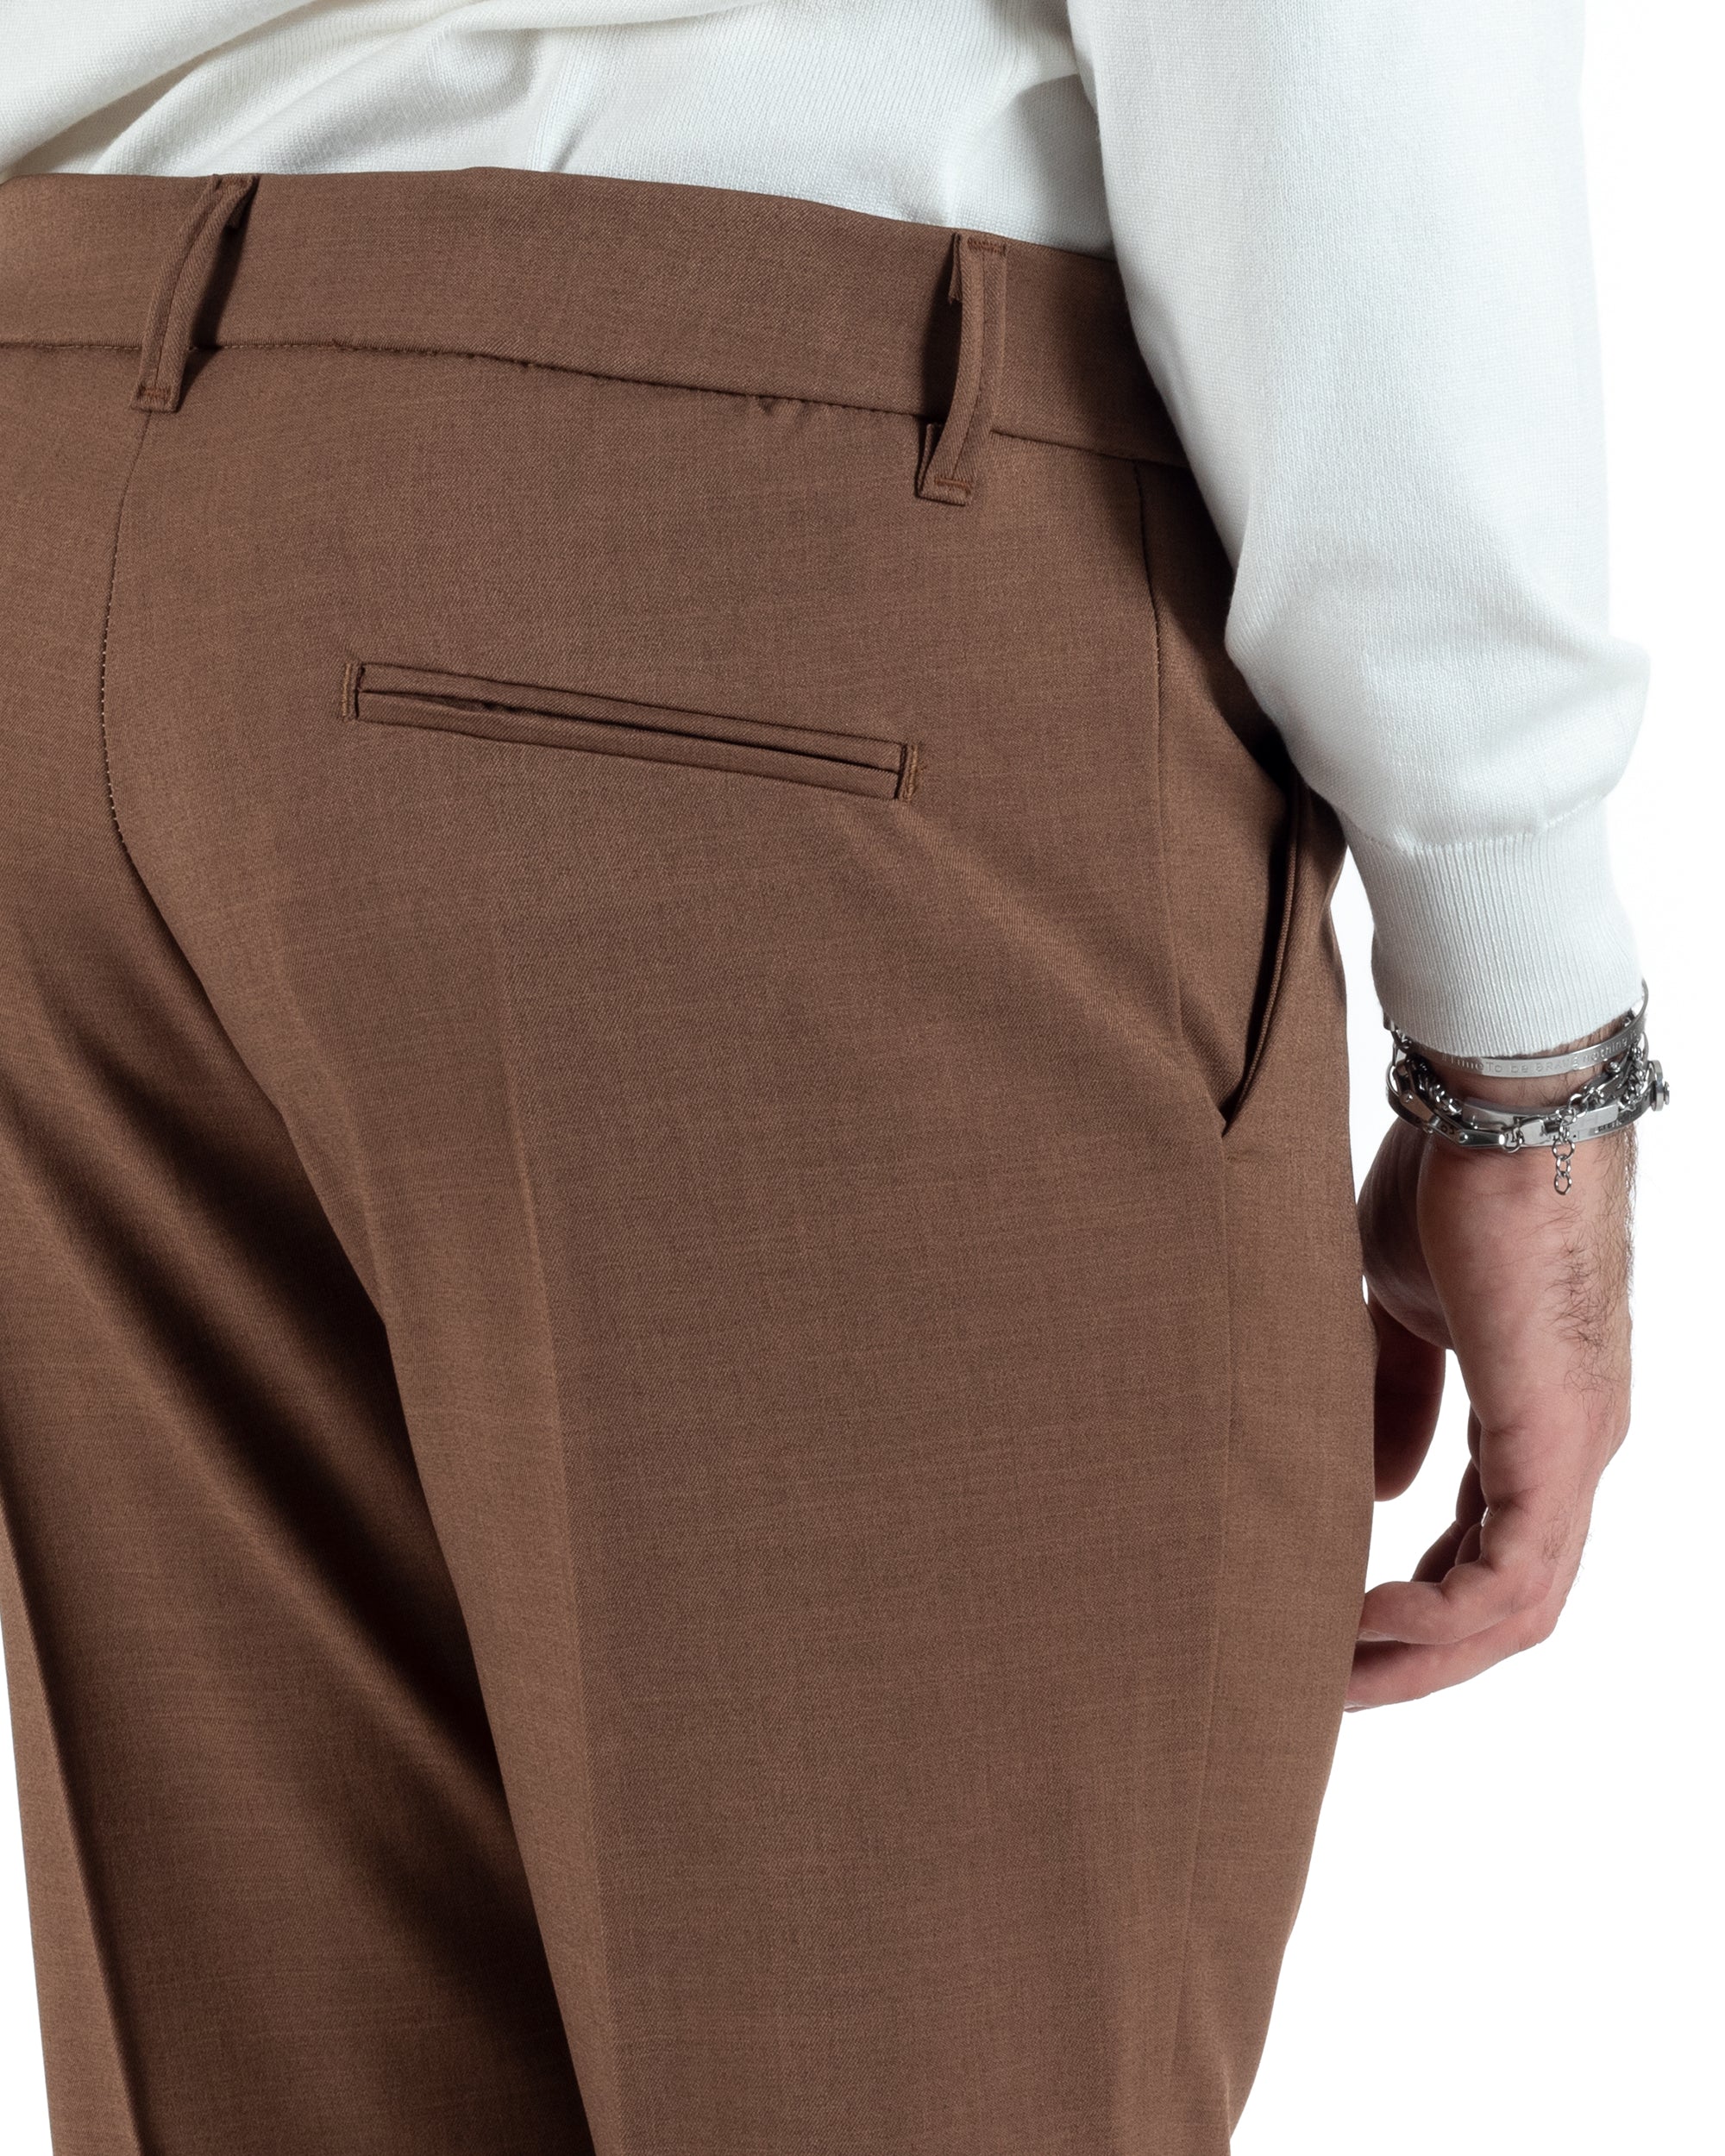 Pantaloni Uomo Viscosa Tasca America Classico Abbottonatura Allungata Casual Marrone GIOSAL-P6008A